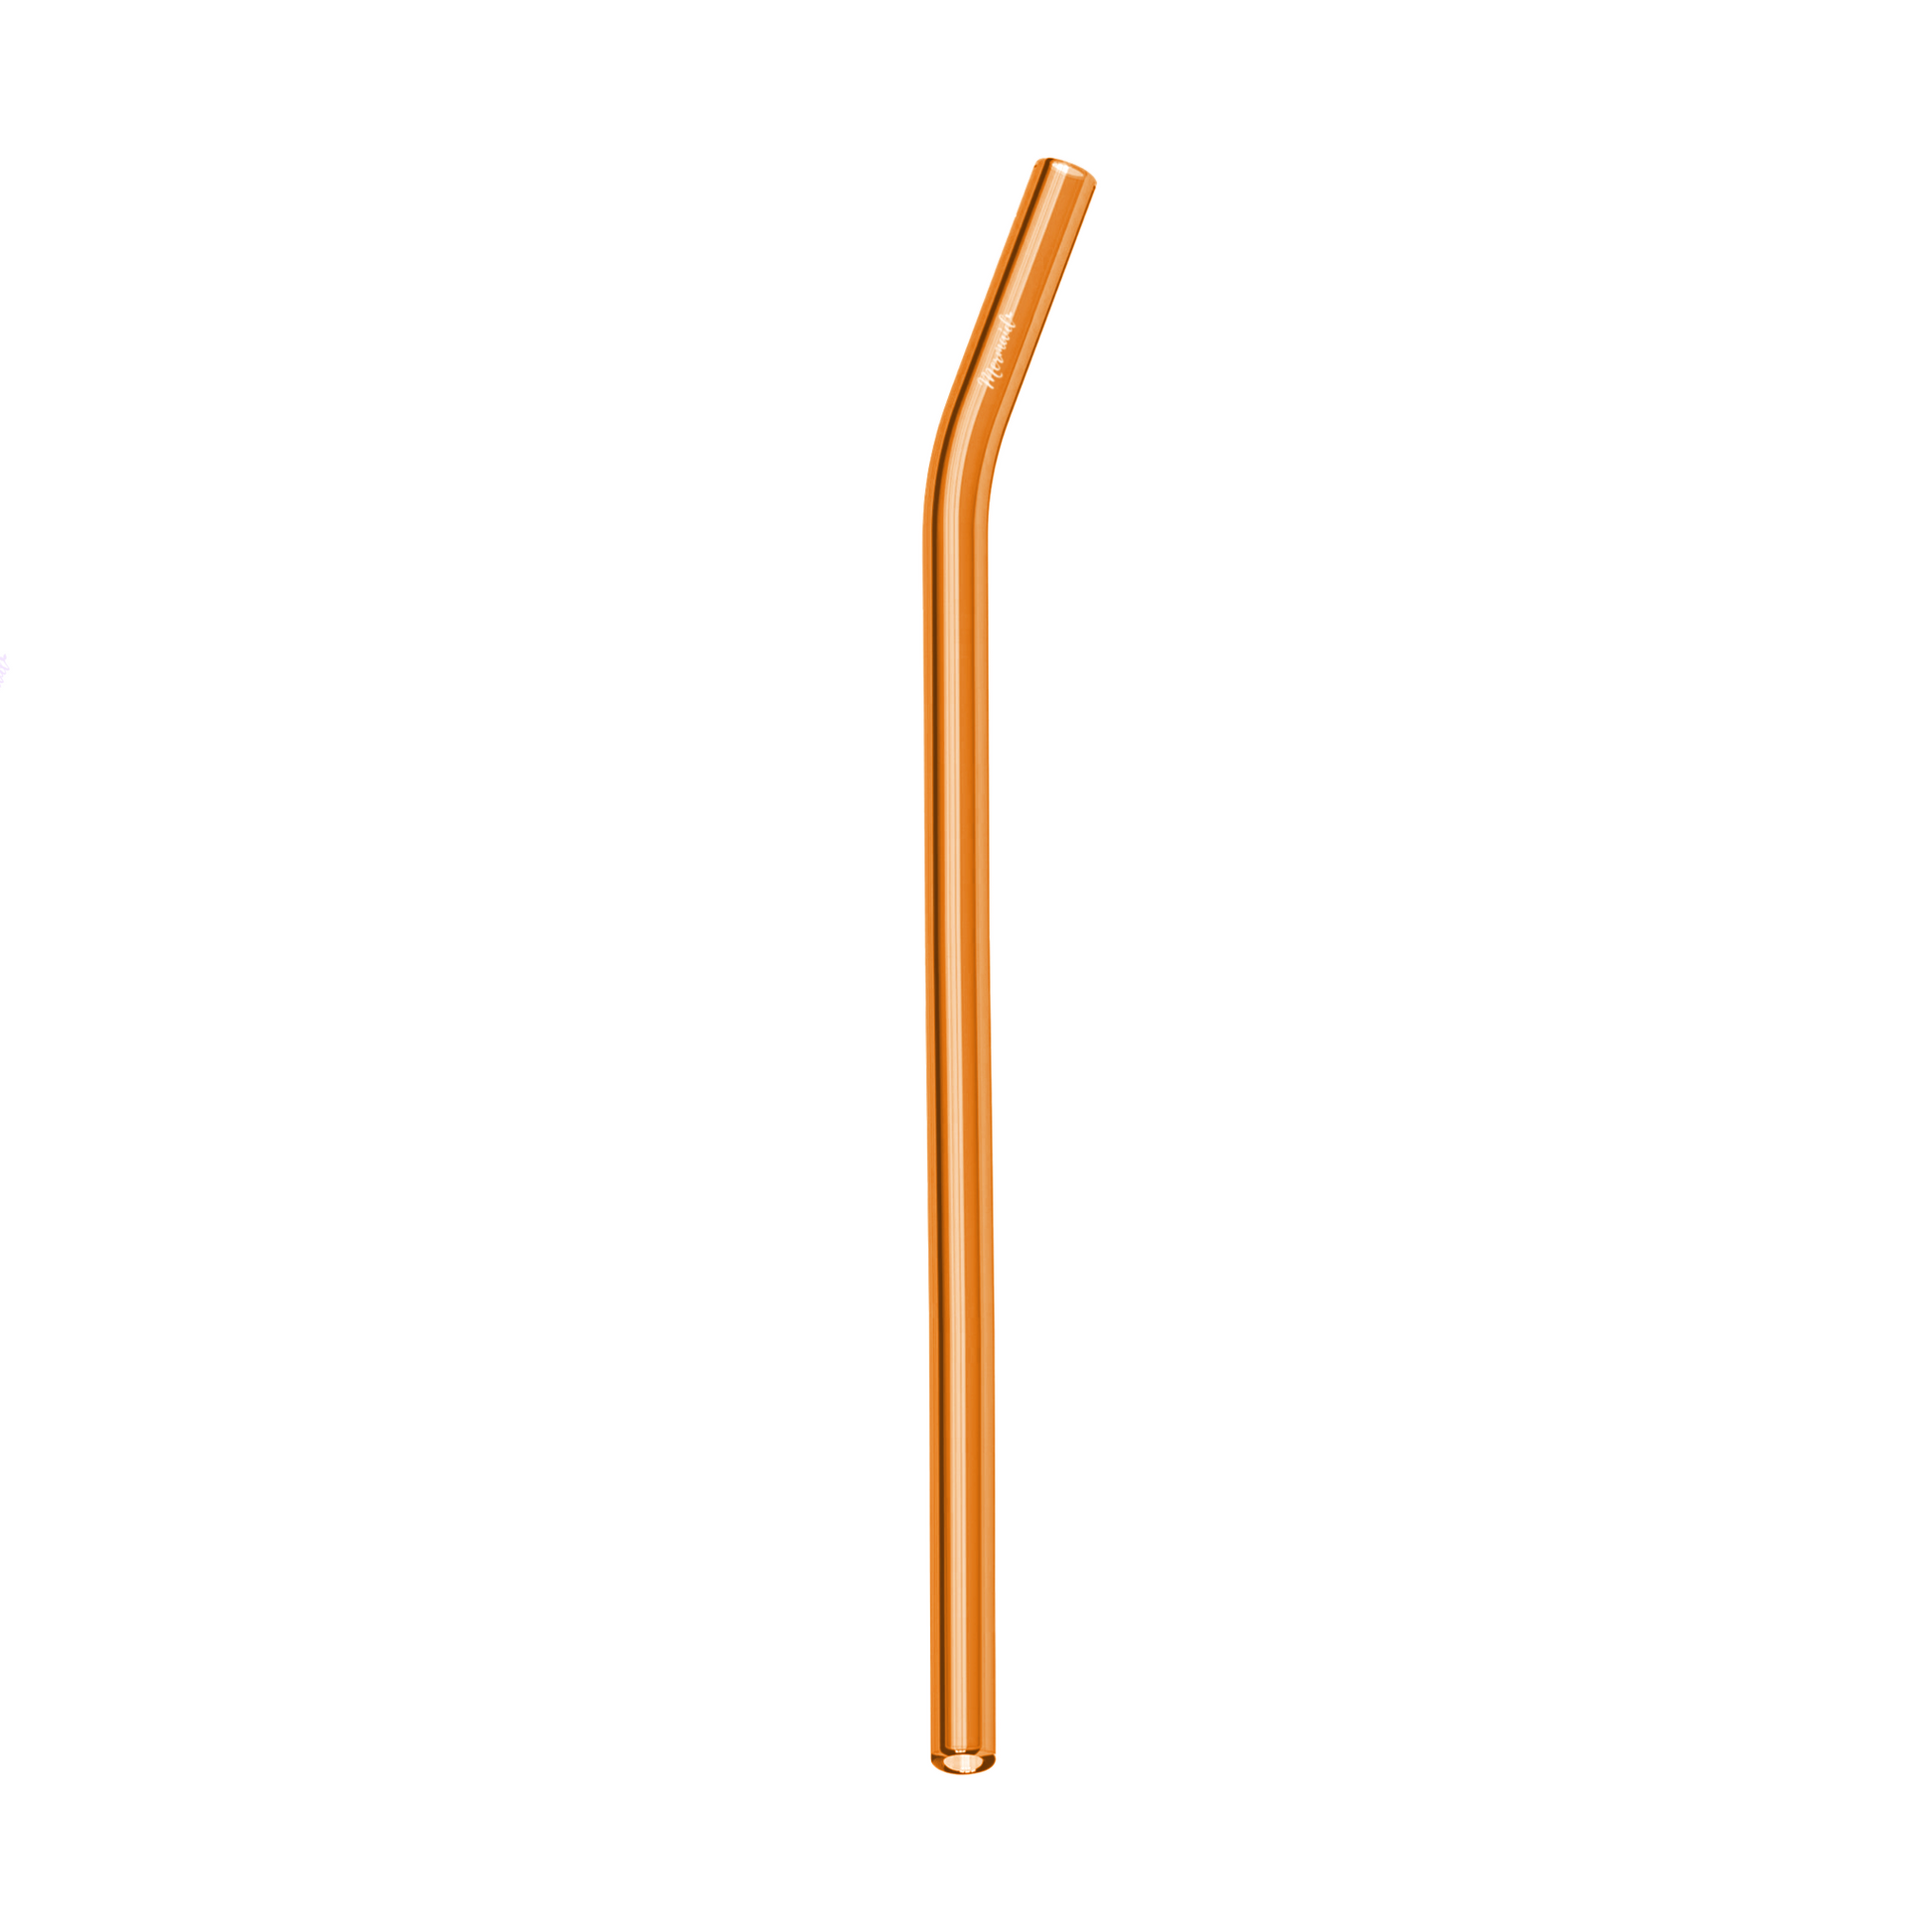 Glass Straws, Mermaid Straw, Reusable Straw, orange glass curved single